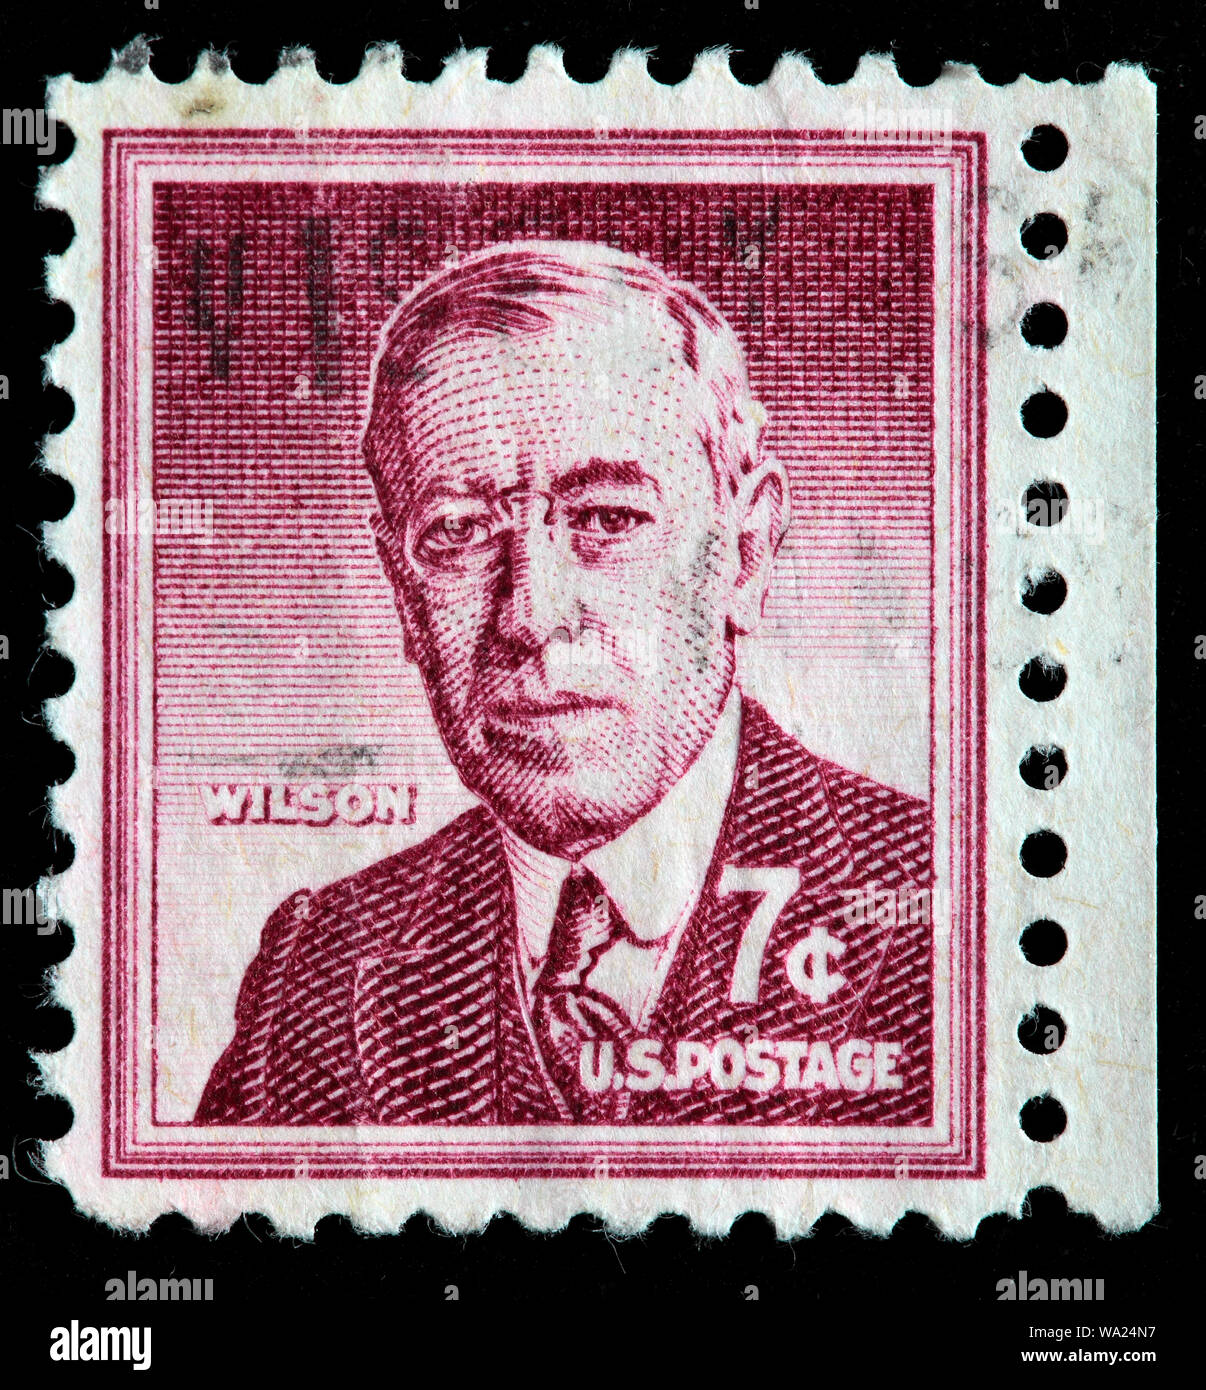 Woodrow Wilson (1856-1924), Président des Etats-Unis, timbre-poste, USA, 1956 Banque D'Images